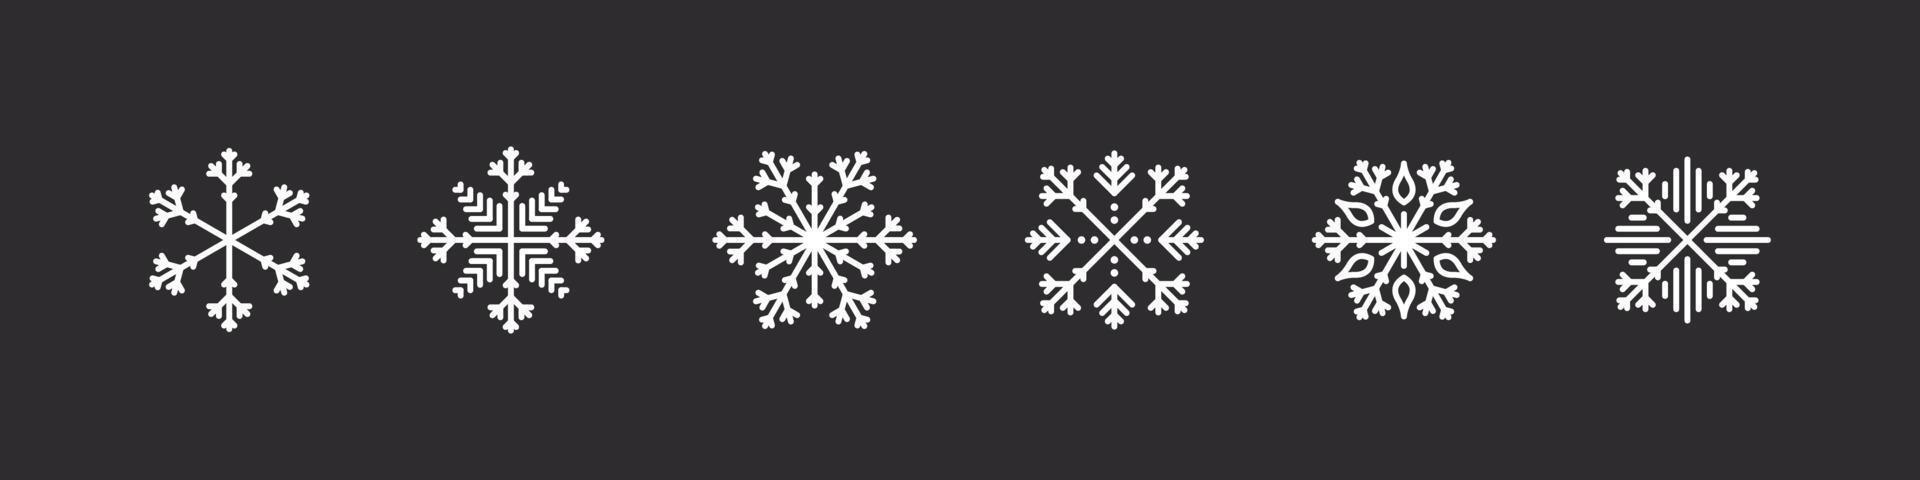 icônes de flocons de neige. flocons de neige blancs sur fond sombre. signes de Noël. collection de flocons de neige de haute qualité. illustration vectorielle vecteur